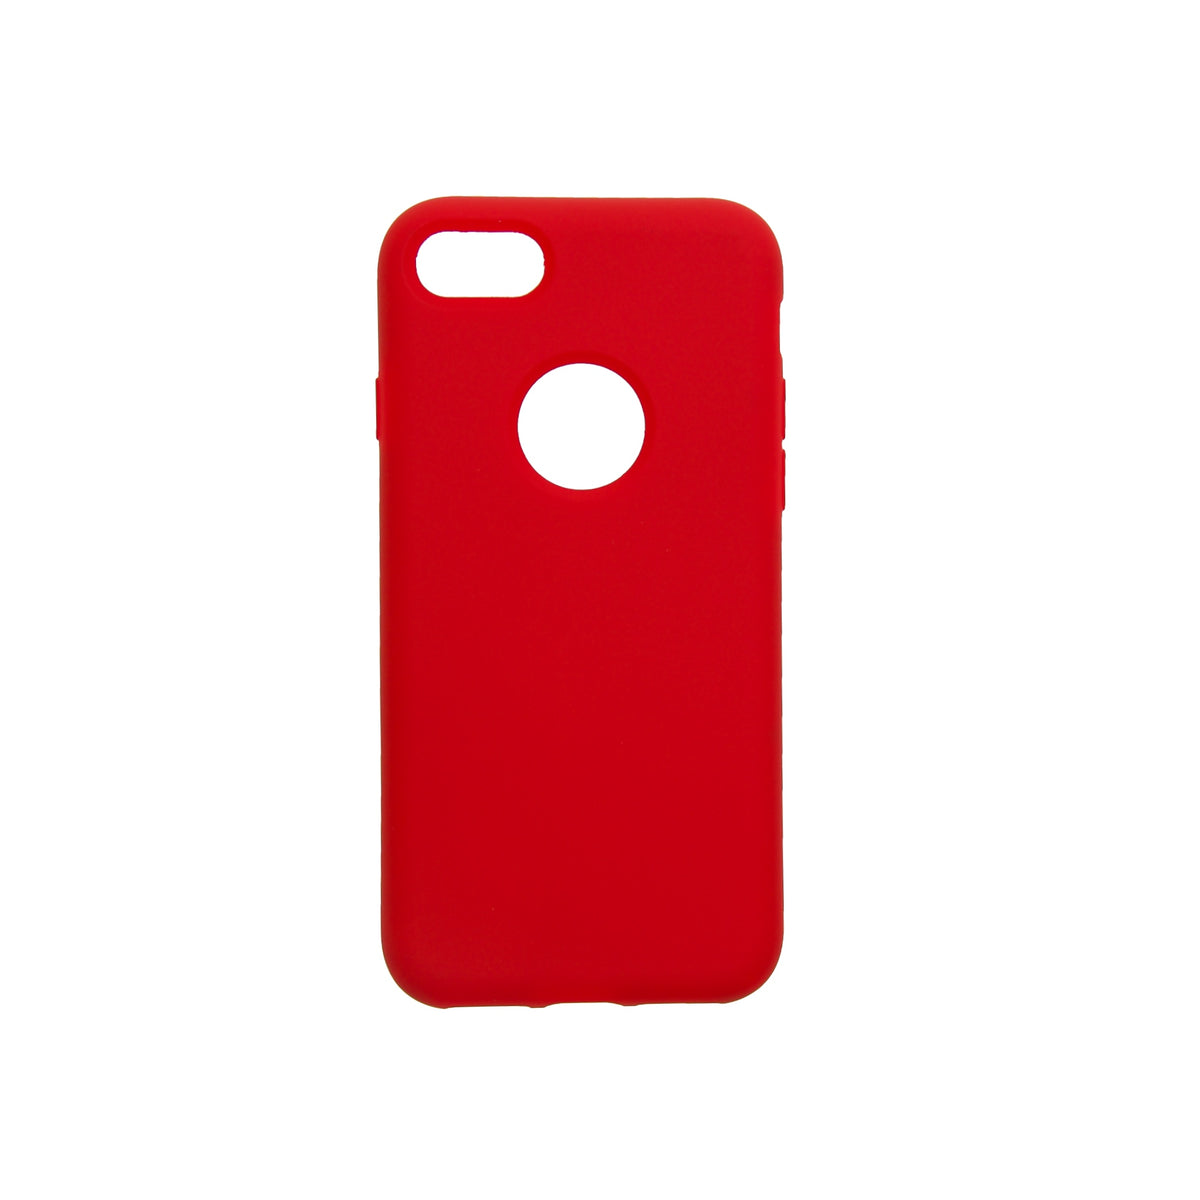 Estuche EL REY silicon rojo - iphone 6 plus